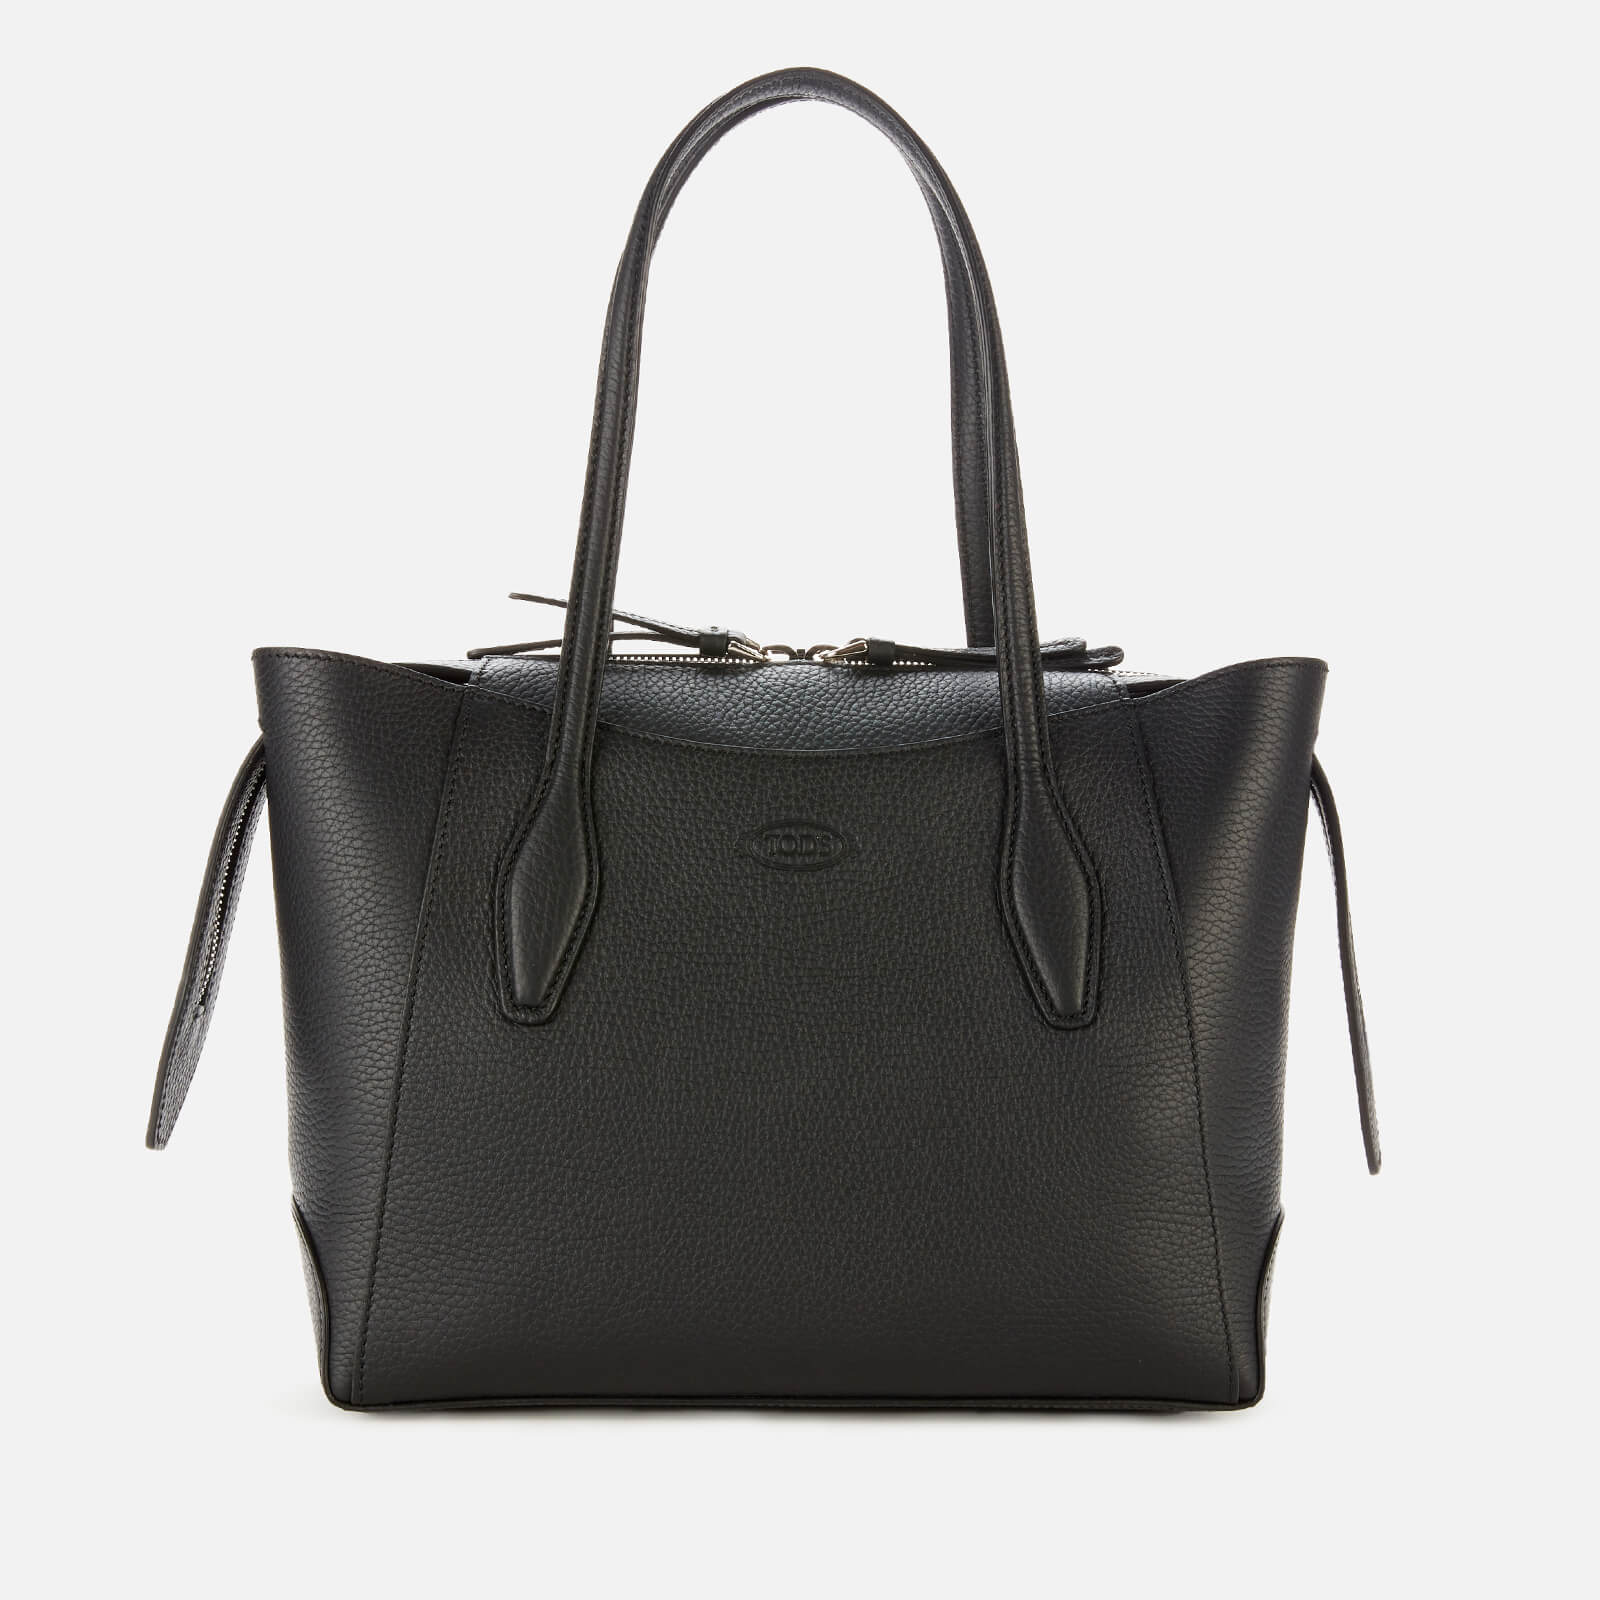 Tod's Women's Medium Zip Tote Bag - Black